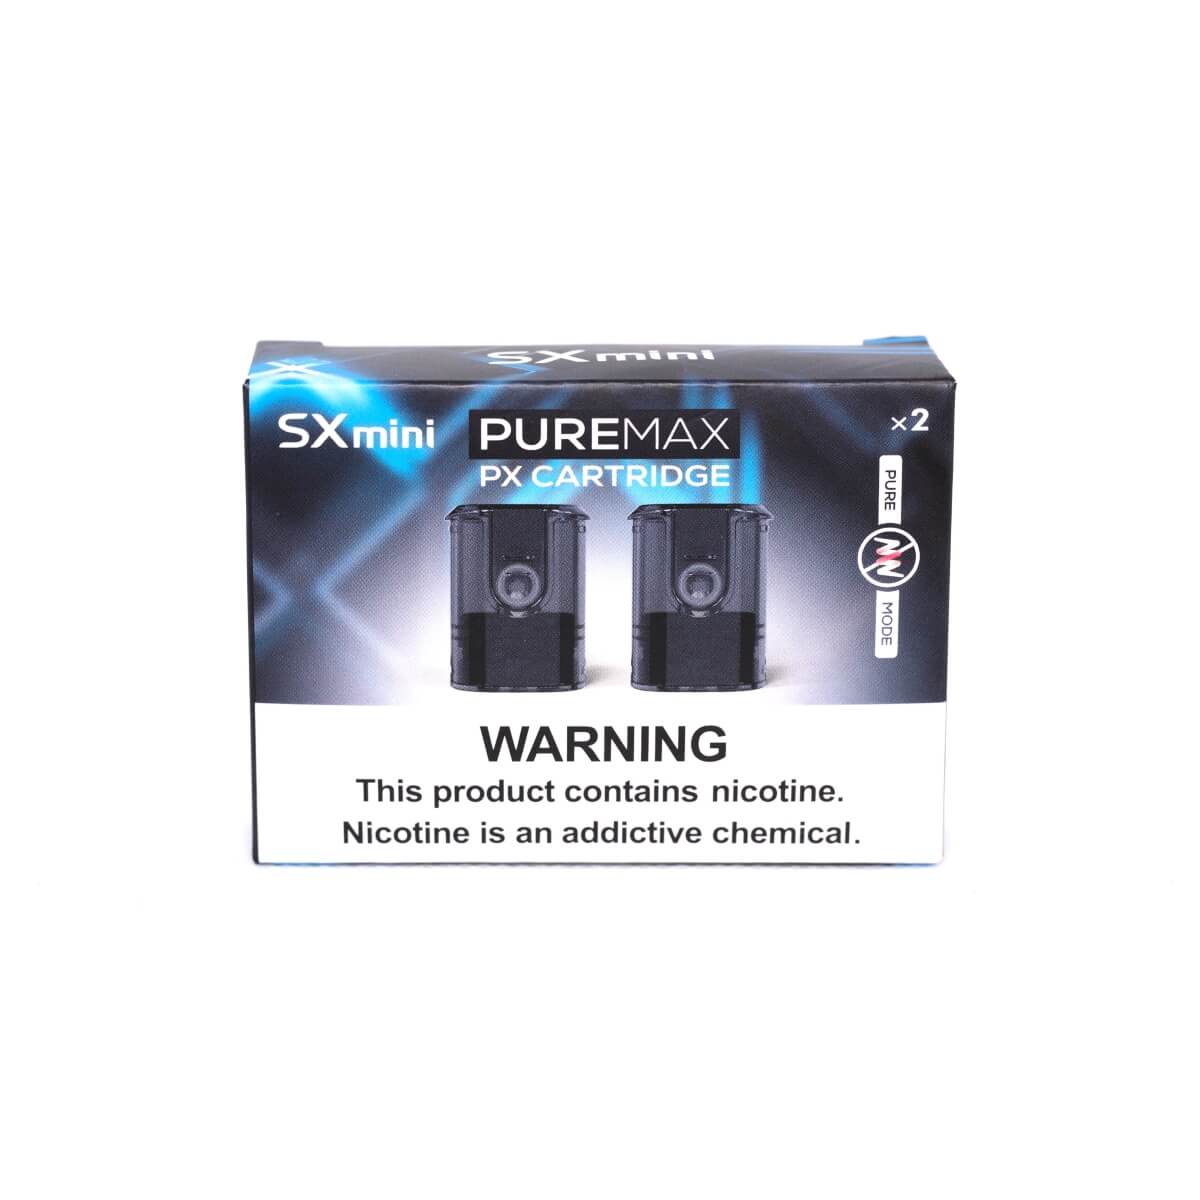 SXmini Puremax PX Cartridges 2 pack